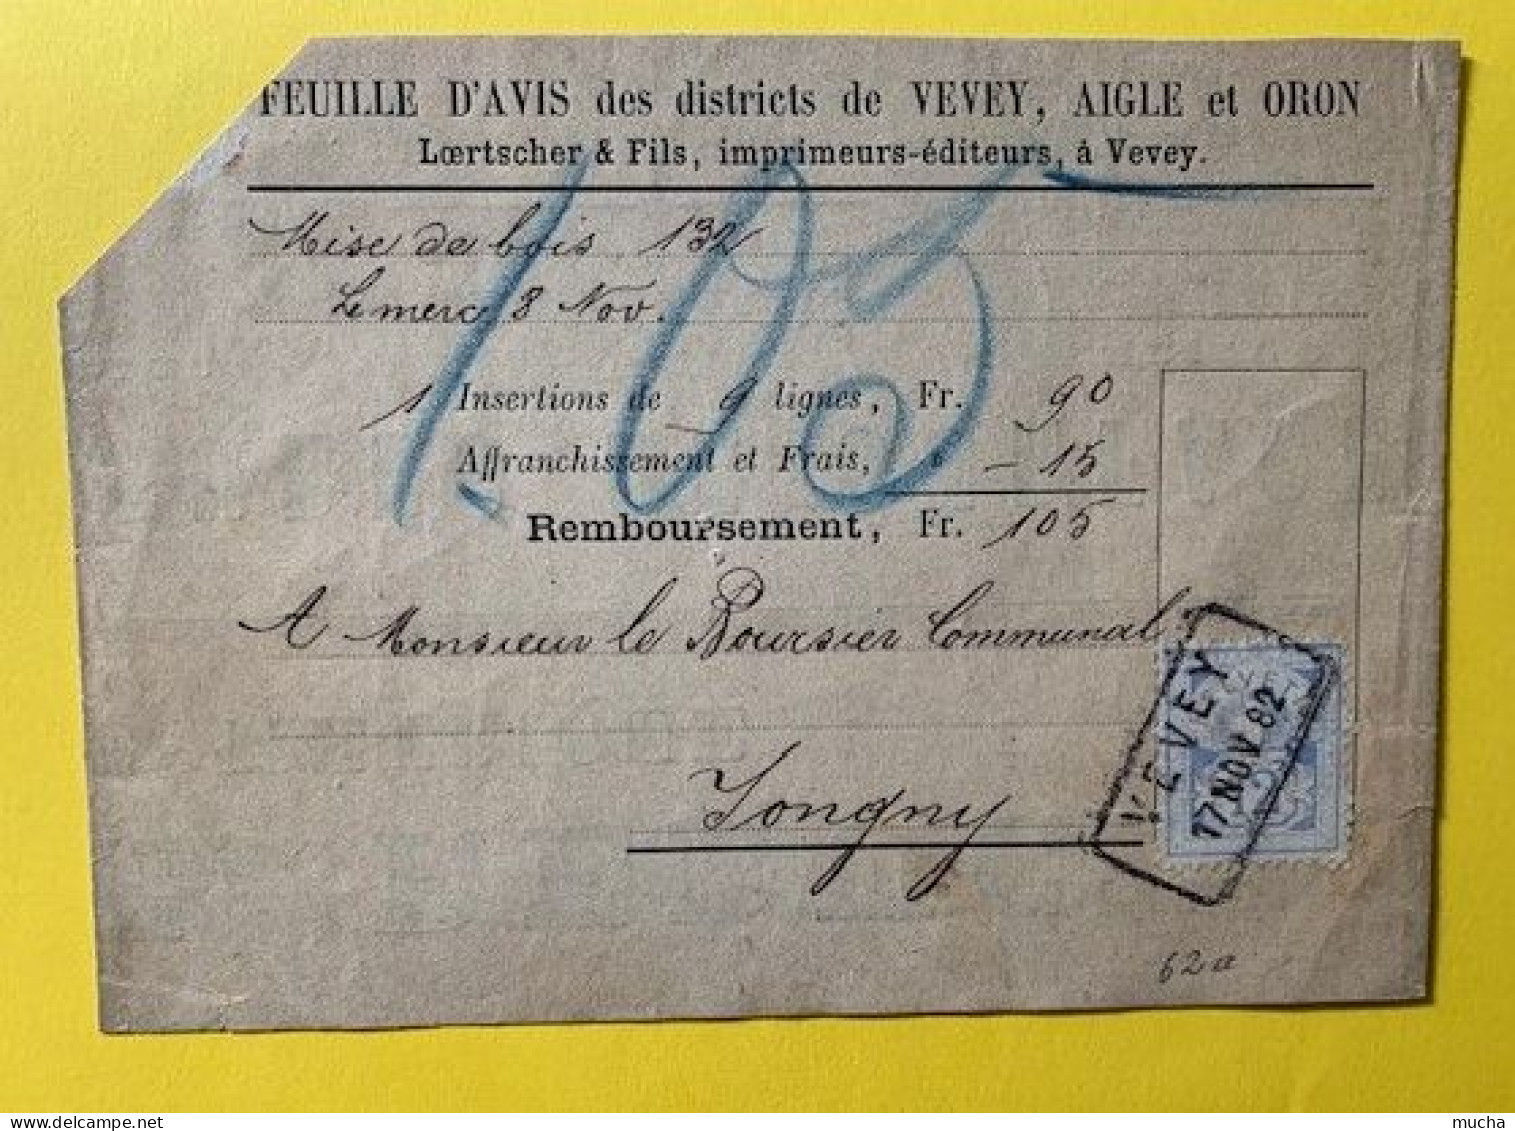 20373 - Remboursement Feuille D'avis Des Districts De Vevey Aigle & Oron Timbre Zst No 62A  Vevey 17.11.1882 - Covers & Documents